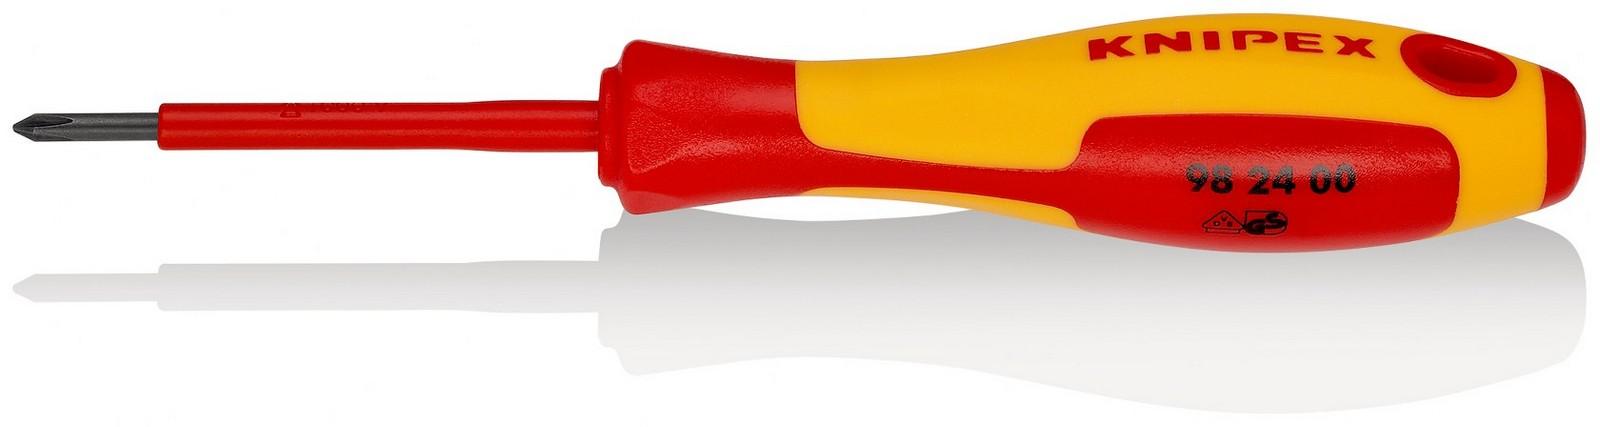 KNIPEX Odvijač krstasti 1000V VDE PH0 98 24 00 crveno-žuti